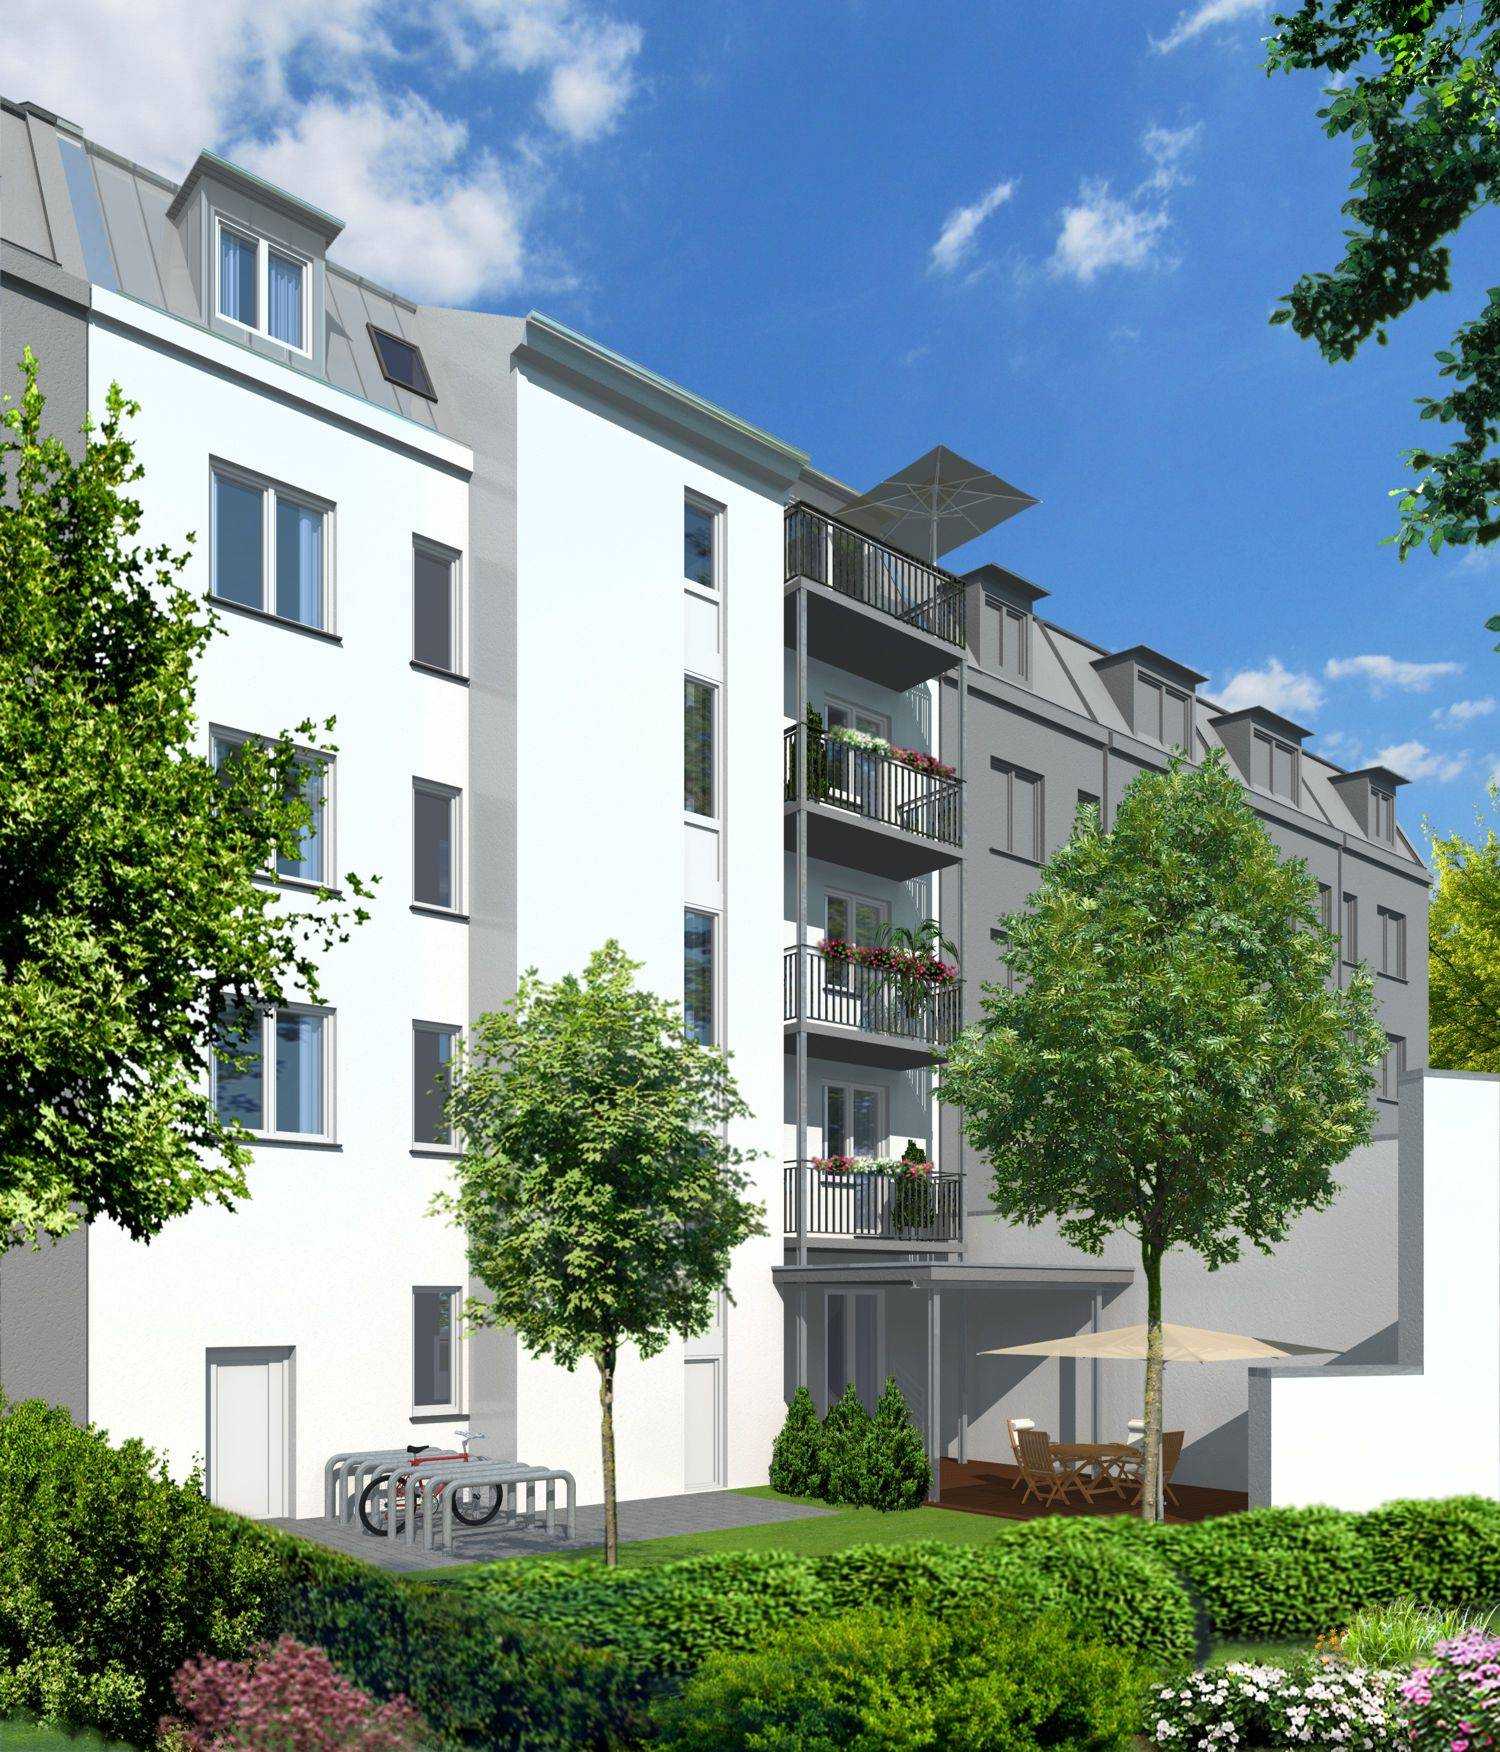 Architekturvisualisierung Sanierung Altbau (Hofseite) in Adamstrasse 41, 90489 Nürnberg, für Kaller & Kaller Werbeagentur GmbH & Co. KG in 2012